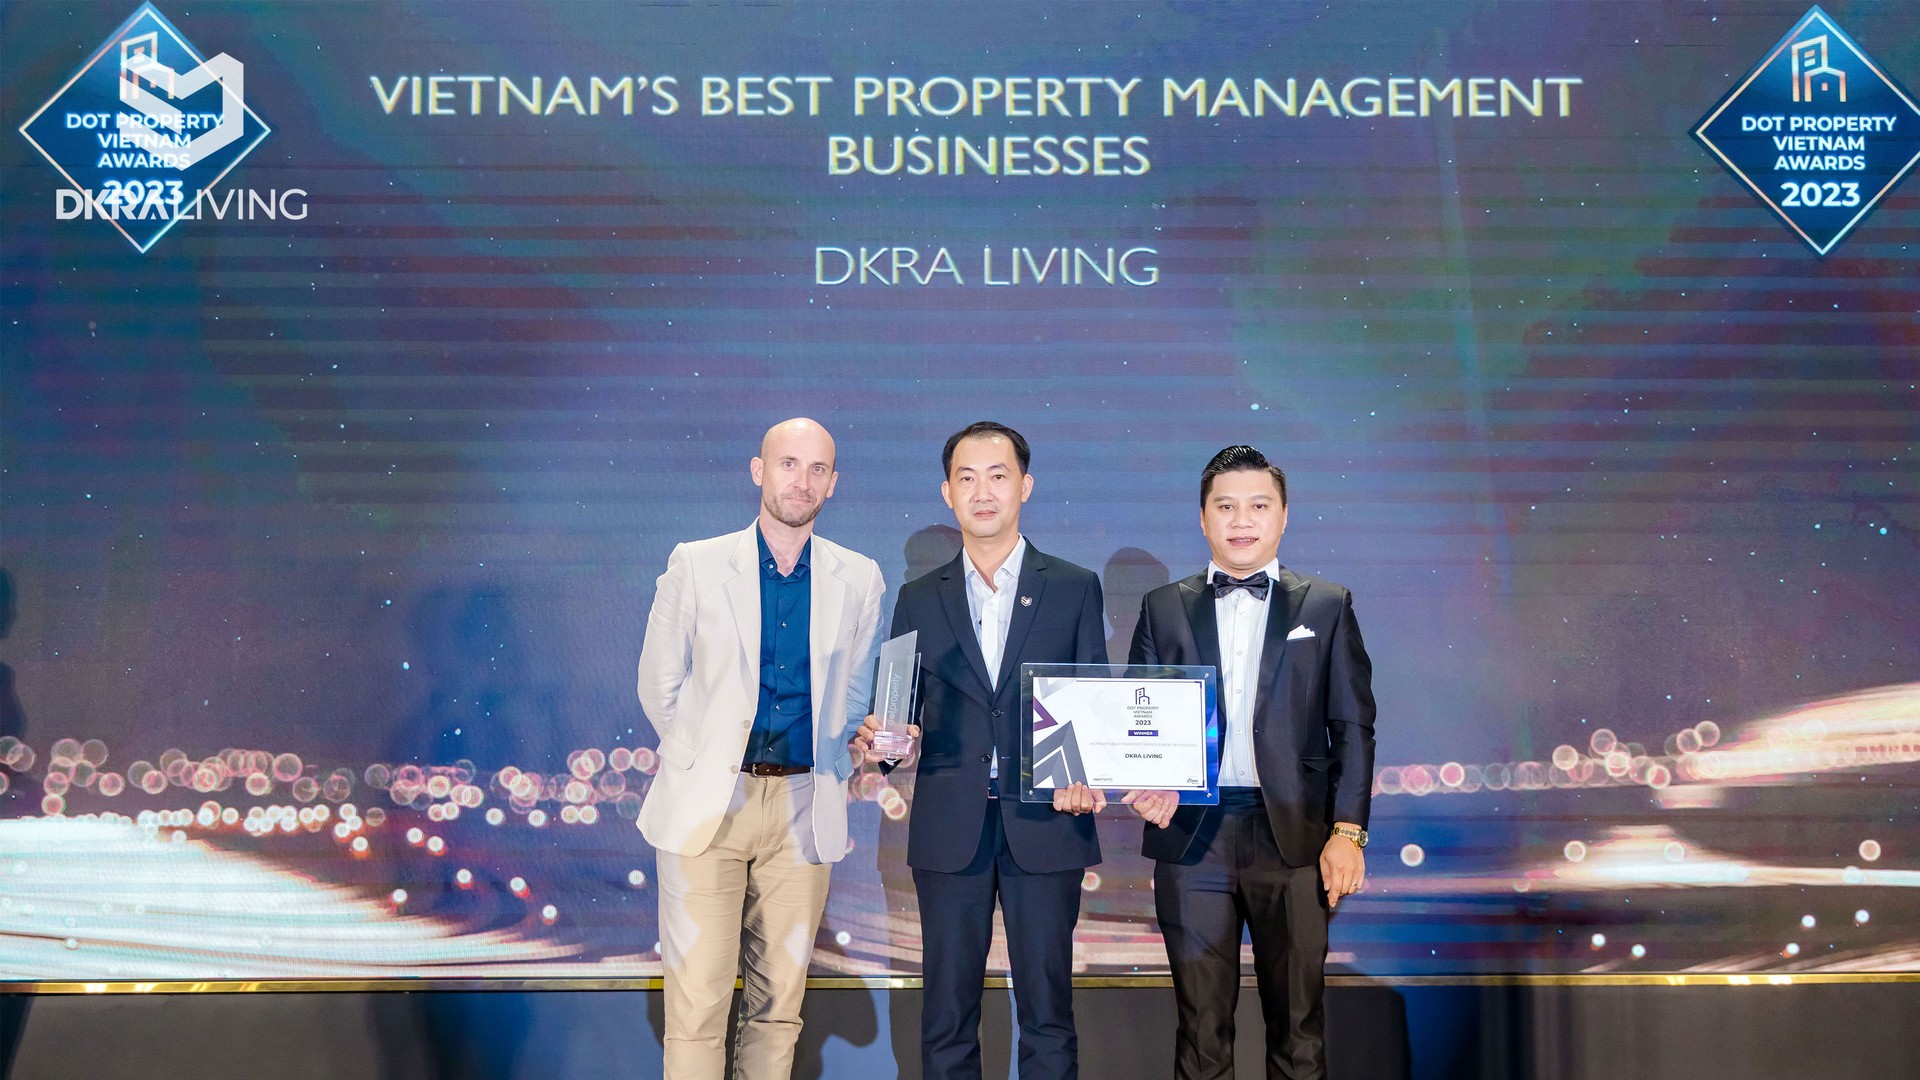 DKRA Living: Chân dung Nhà quản lý - vận hành Bất động sản tốt nhất Việt Nam 2023